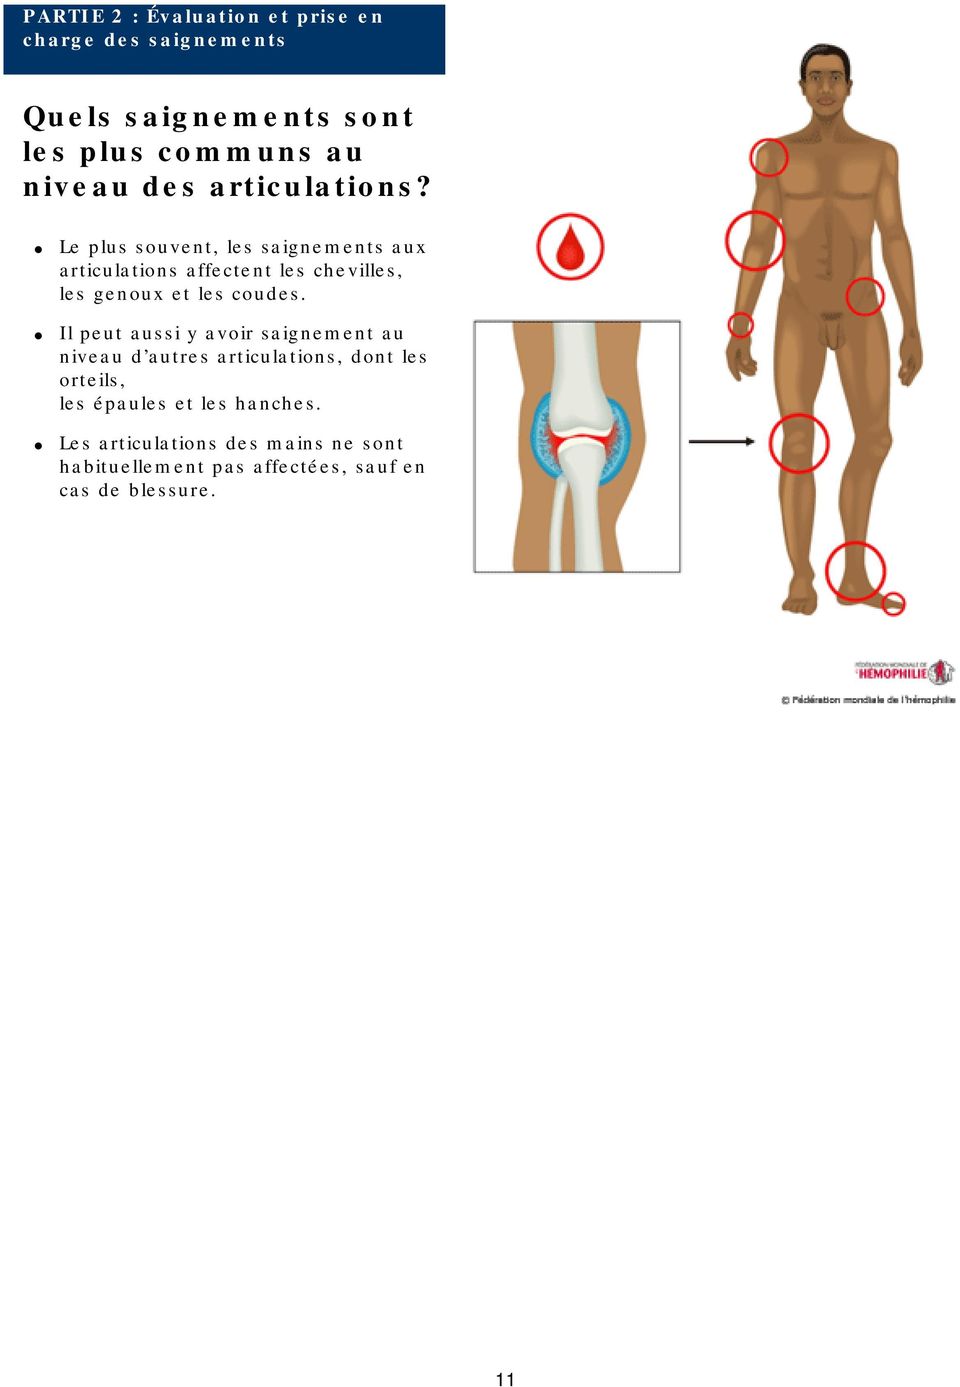 Le plus souvent, les saignements aux articulations affectent les chevilles, les genoux et les coudes.